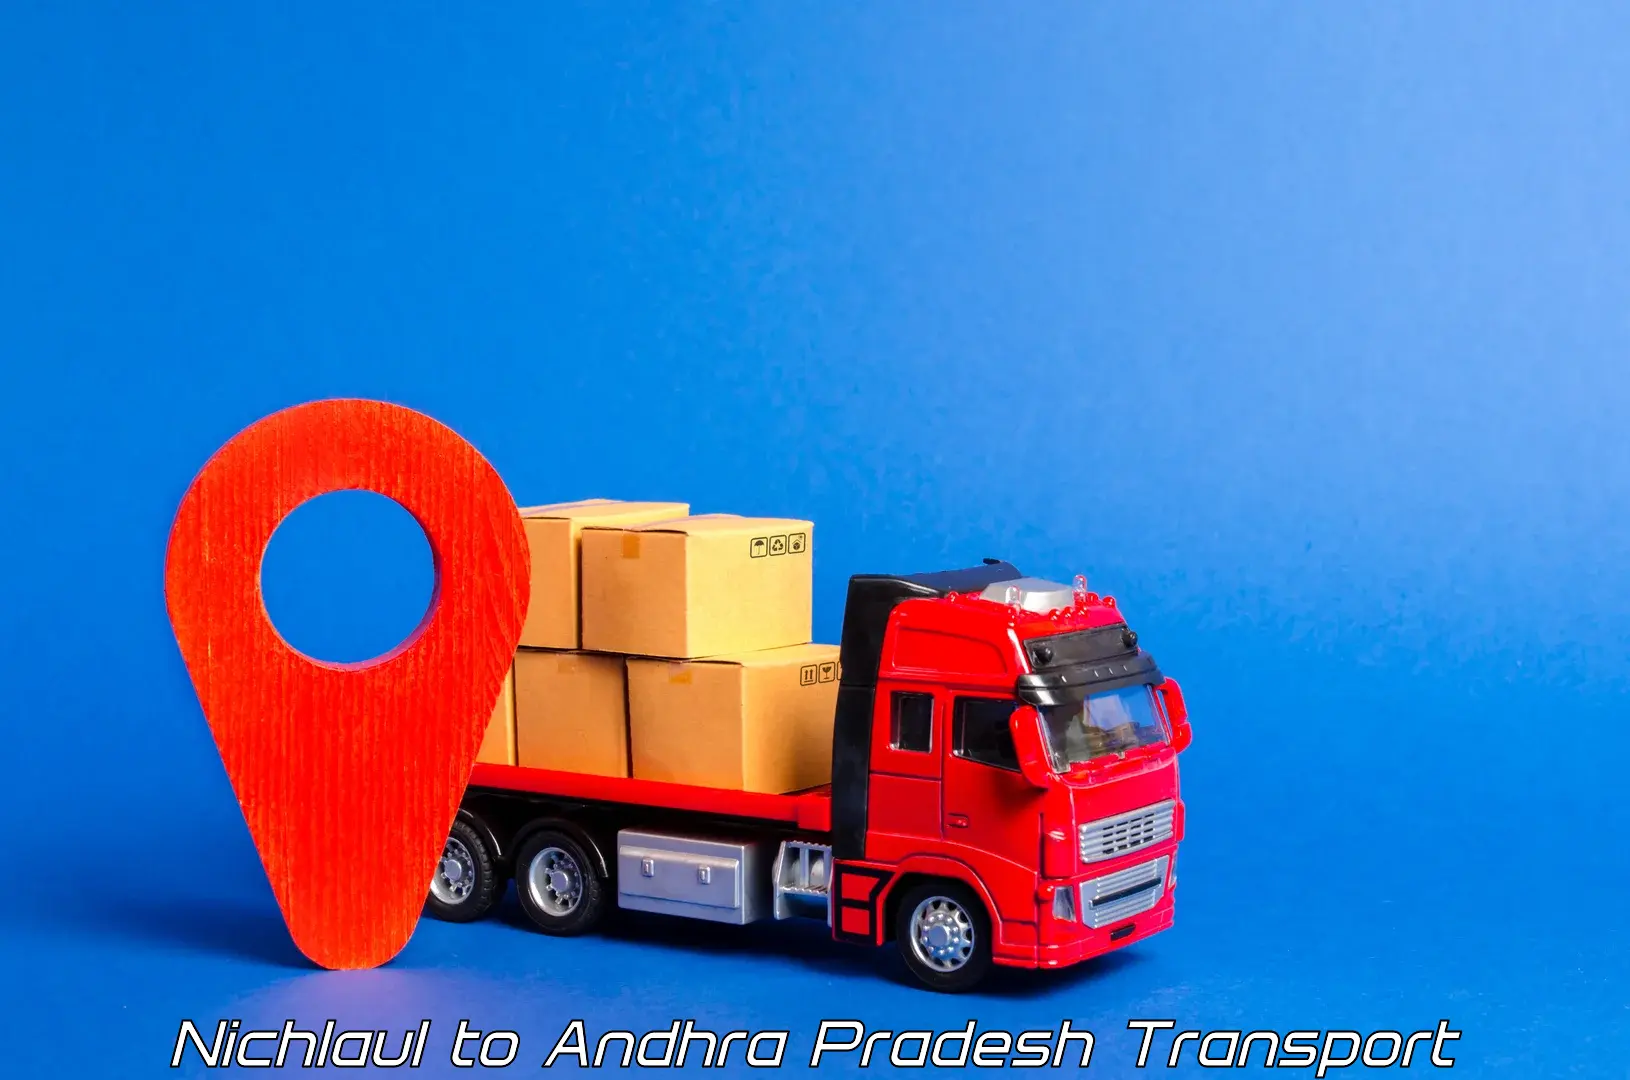 Road transport online services in Nichlaul to Konduru